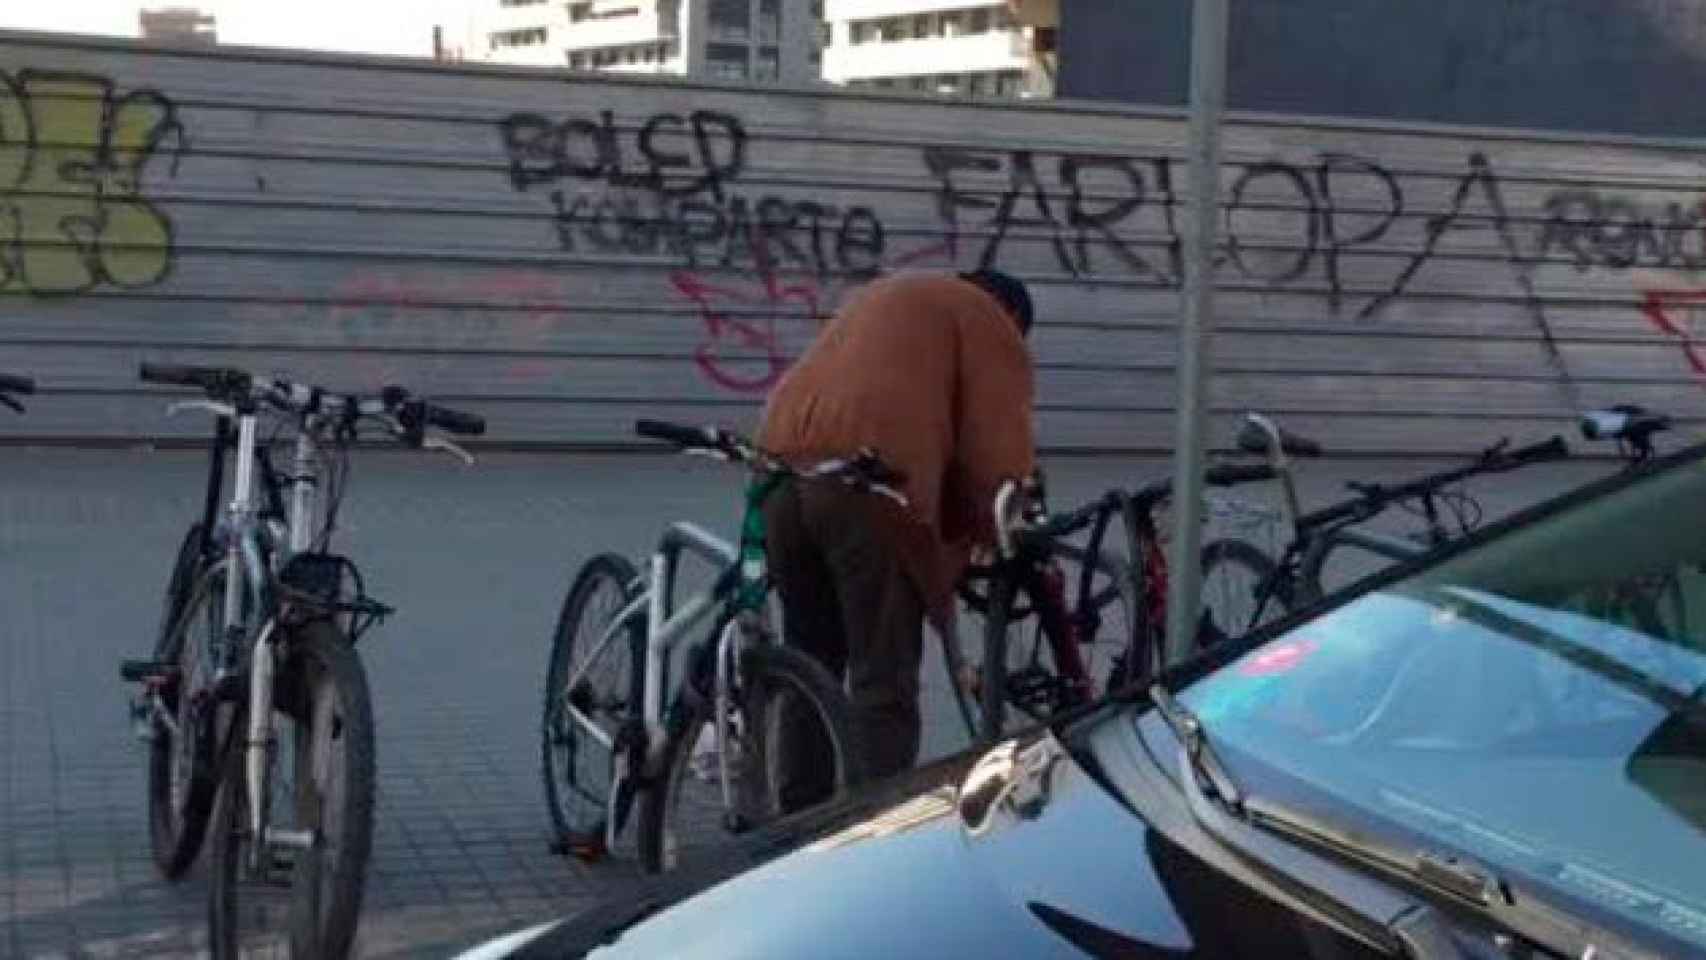 El presunto ladrón, serrando la cadena de una bicicleta en Barcelona / CG